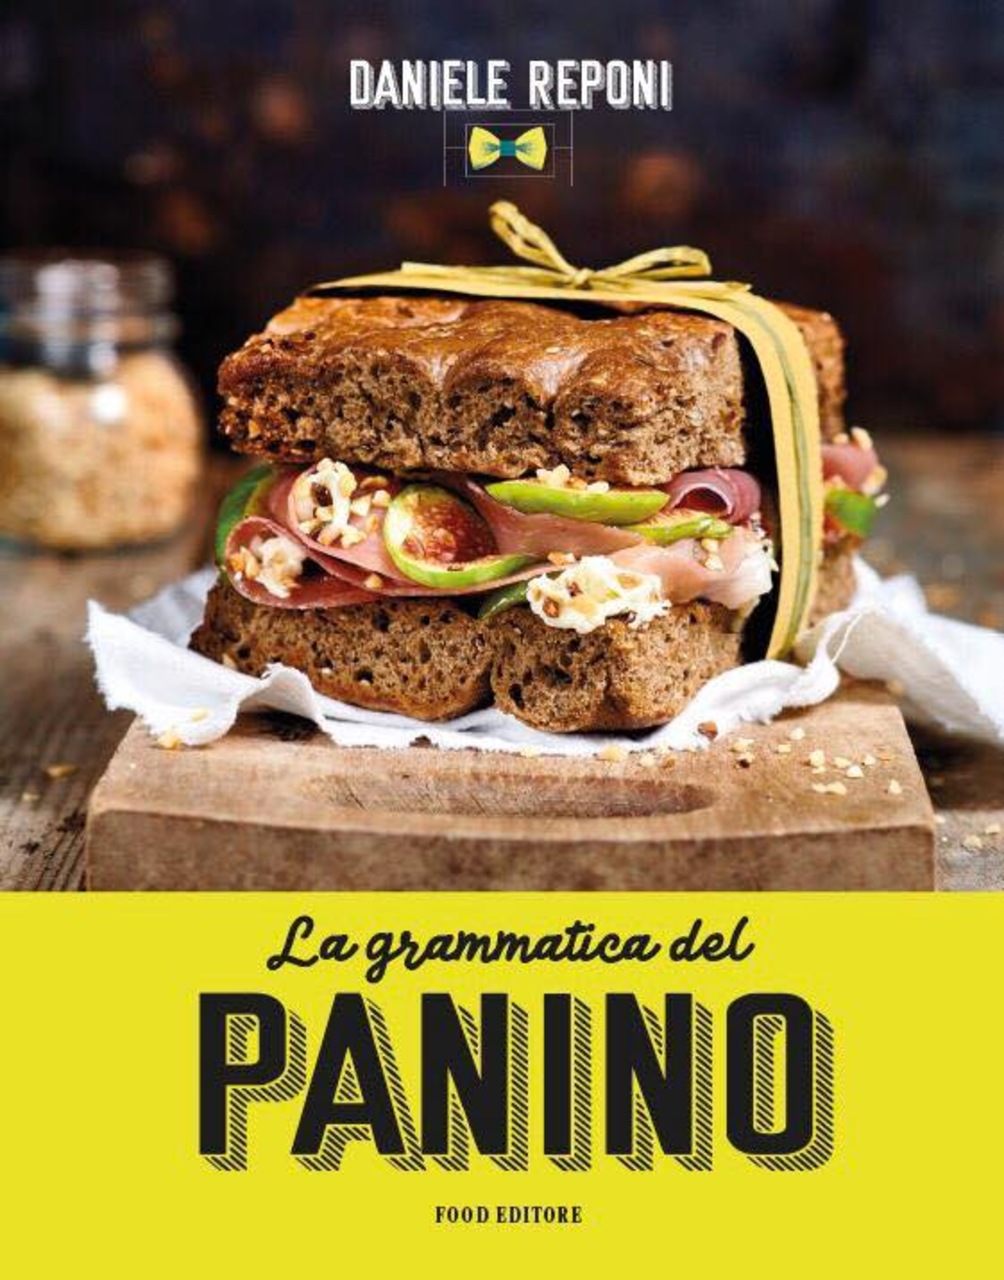 Gourmet-Sandwich: das Cover des Buches „Die Grammatik des Sandwichs“ von Daniele Reponi